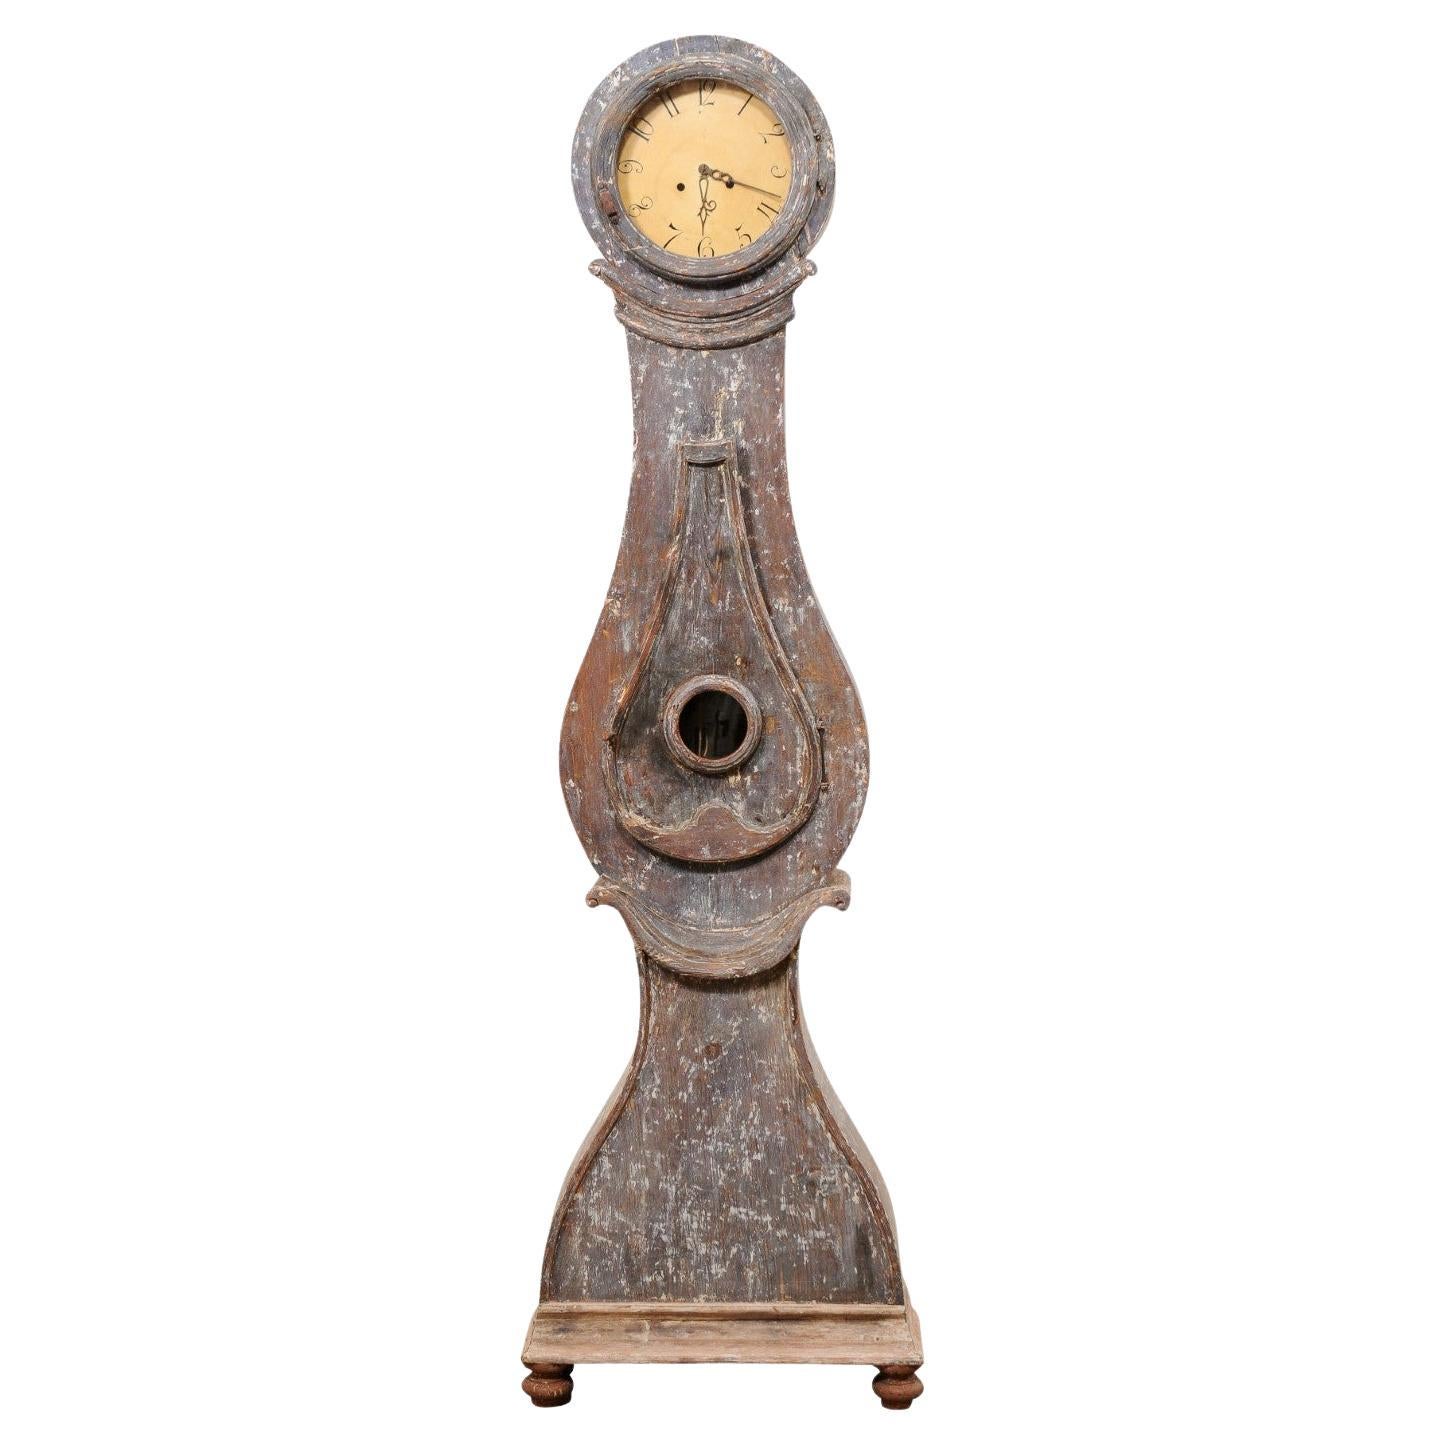 Reloj de pie Fryksdahl sueco del siglo XIX con su esfera y movimientos metálicos originales